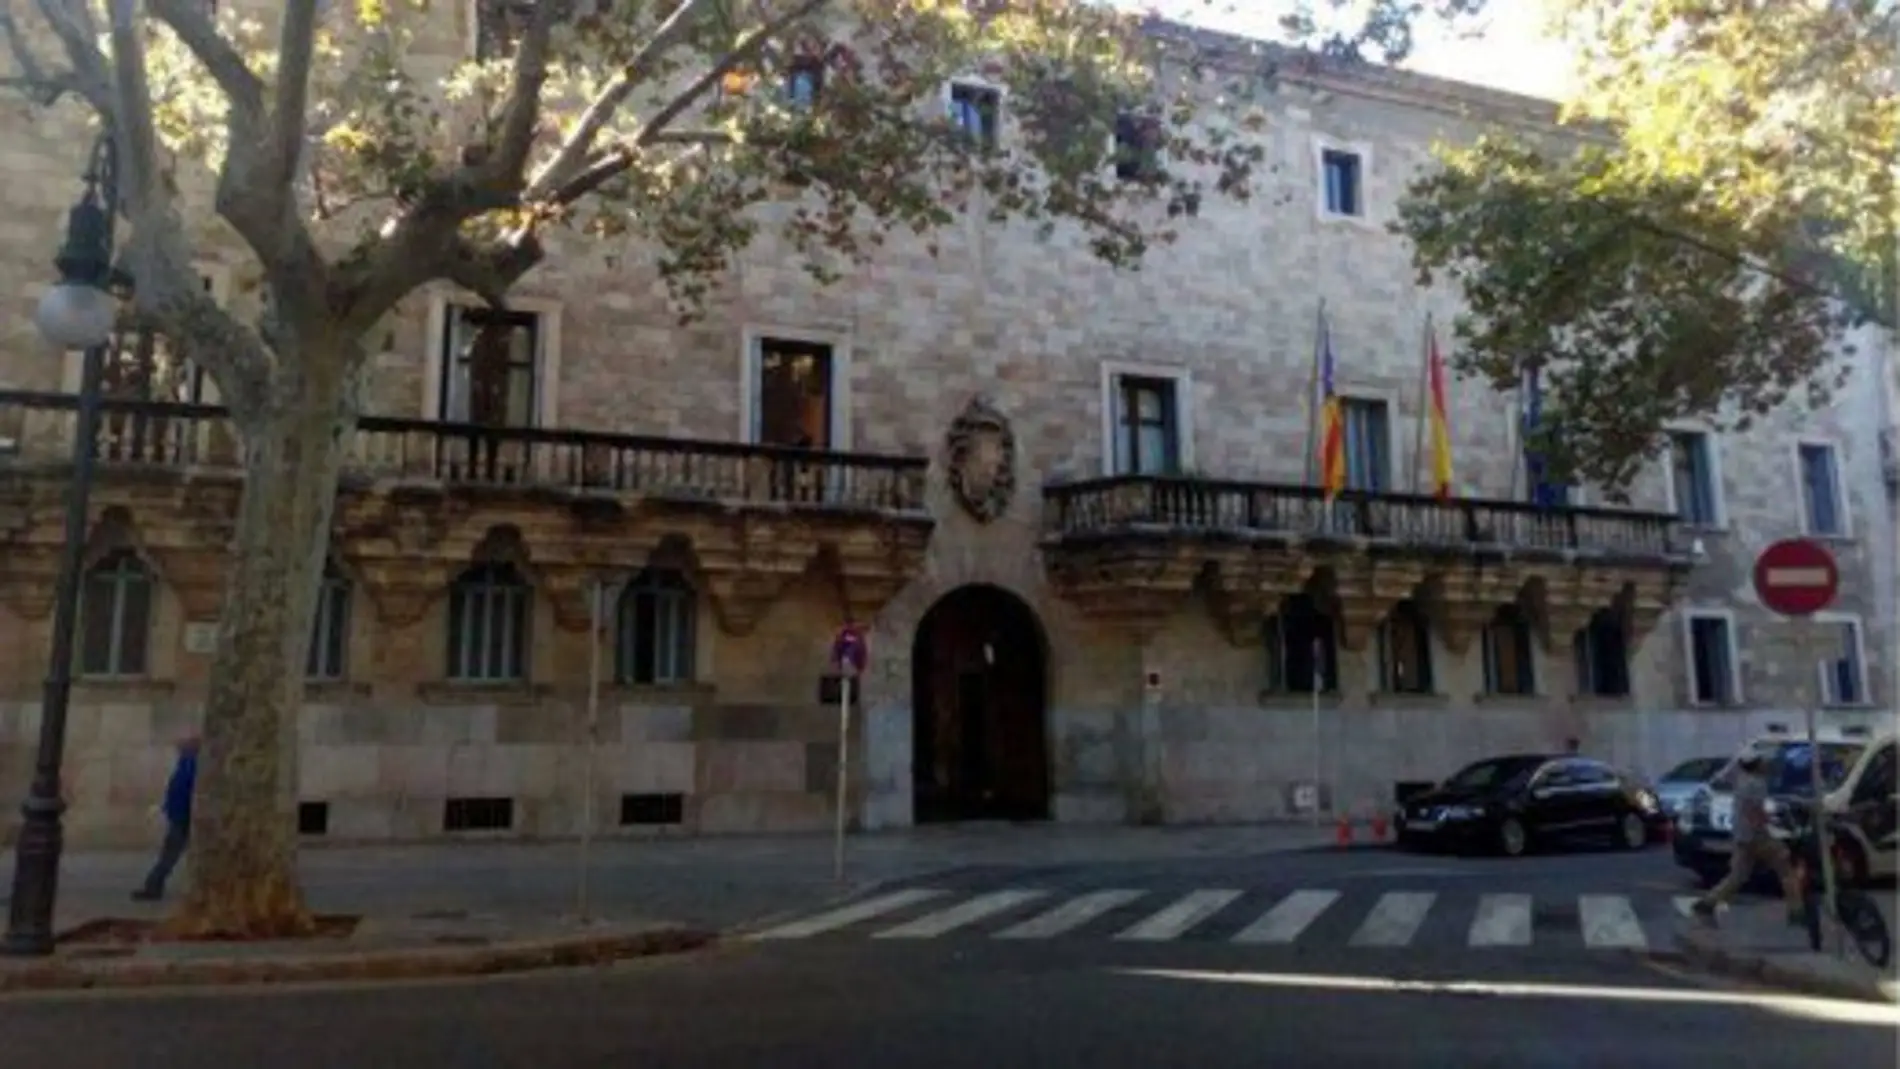 El Palacio de Justicia, sede del Tribunal Superior de Justicia de Baleares (TSJIB) y la Audiencia Provincial, en la plaza Weyler de Palma